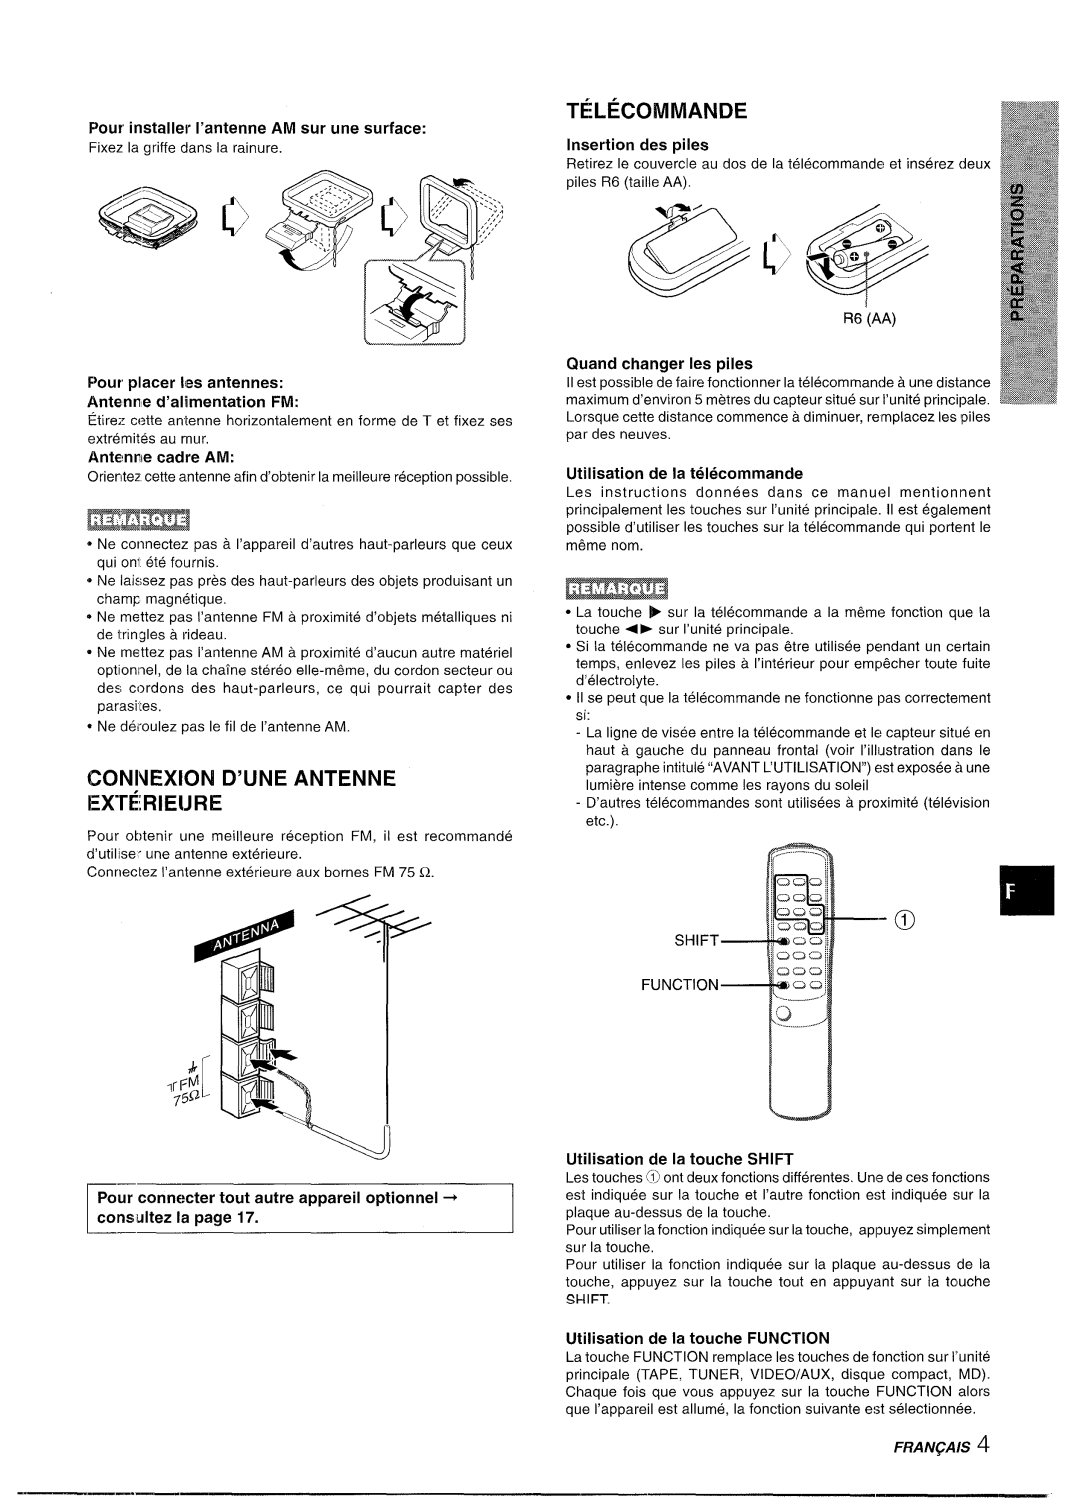 Aiwa XR-M35 manual TkLECOMMANDE, CONNEX1ON D’UNE ANTENNE EX@RIEIJRE, Pour installer l’antenne AM sur une surface 